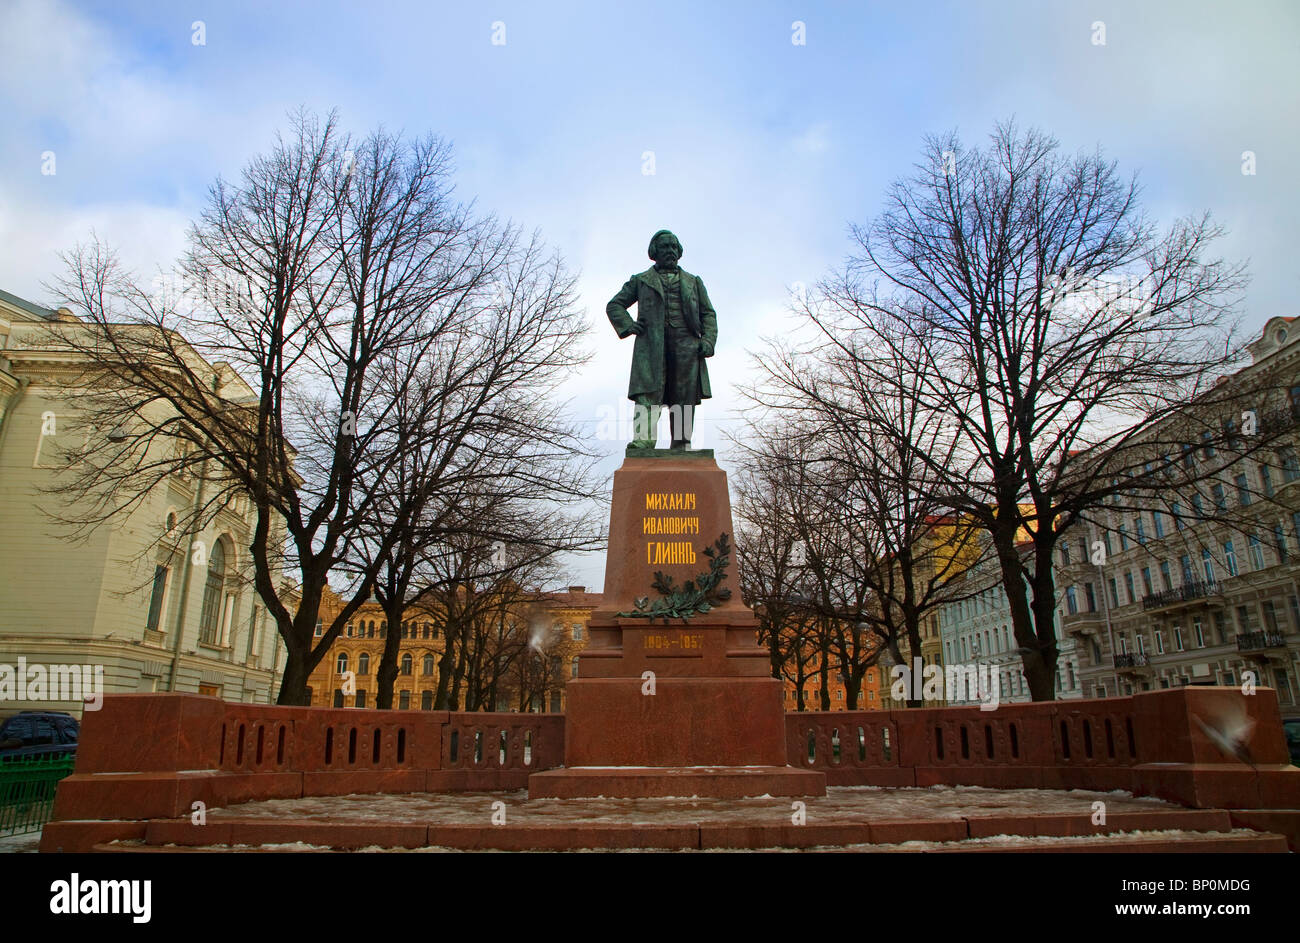 Russia, San Pietroburgo; un monumento per il compositore russo Mikhail Glinka, famoso per la sua opera "Ruslan e Ludmilla' Foto Stock